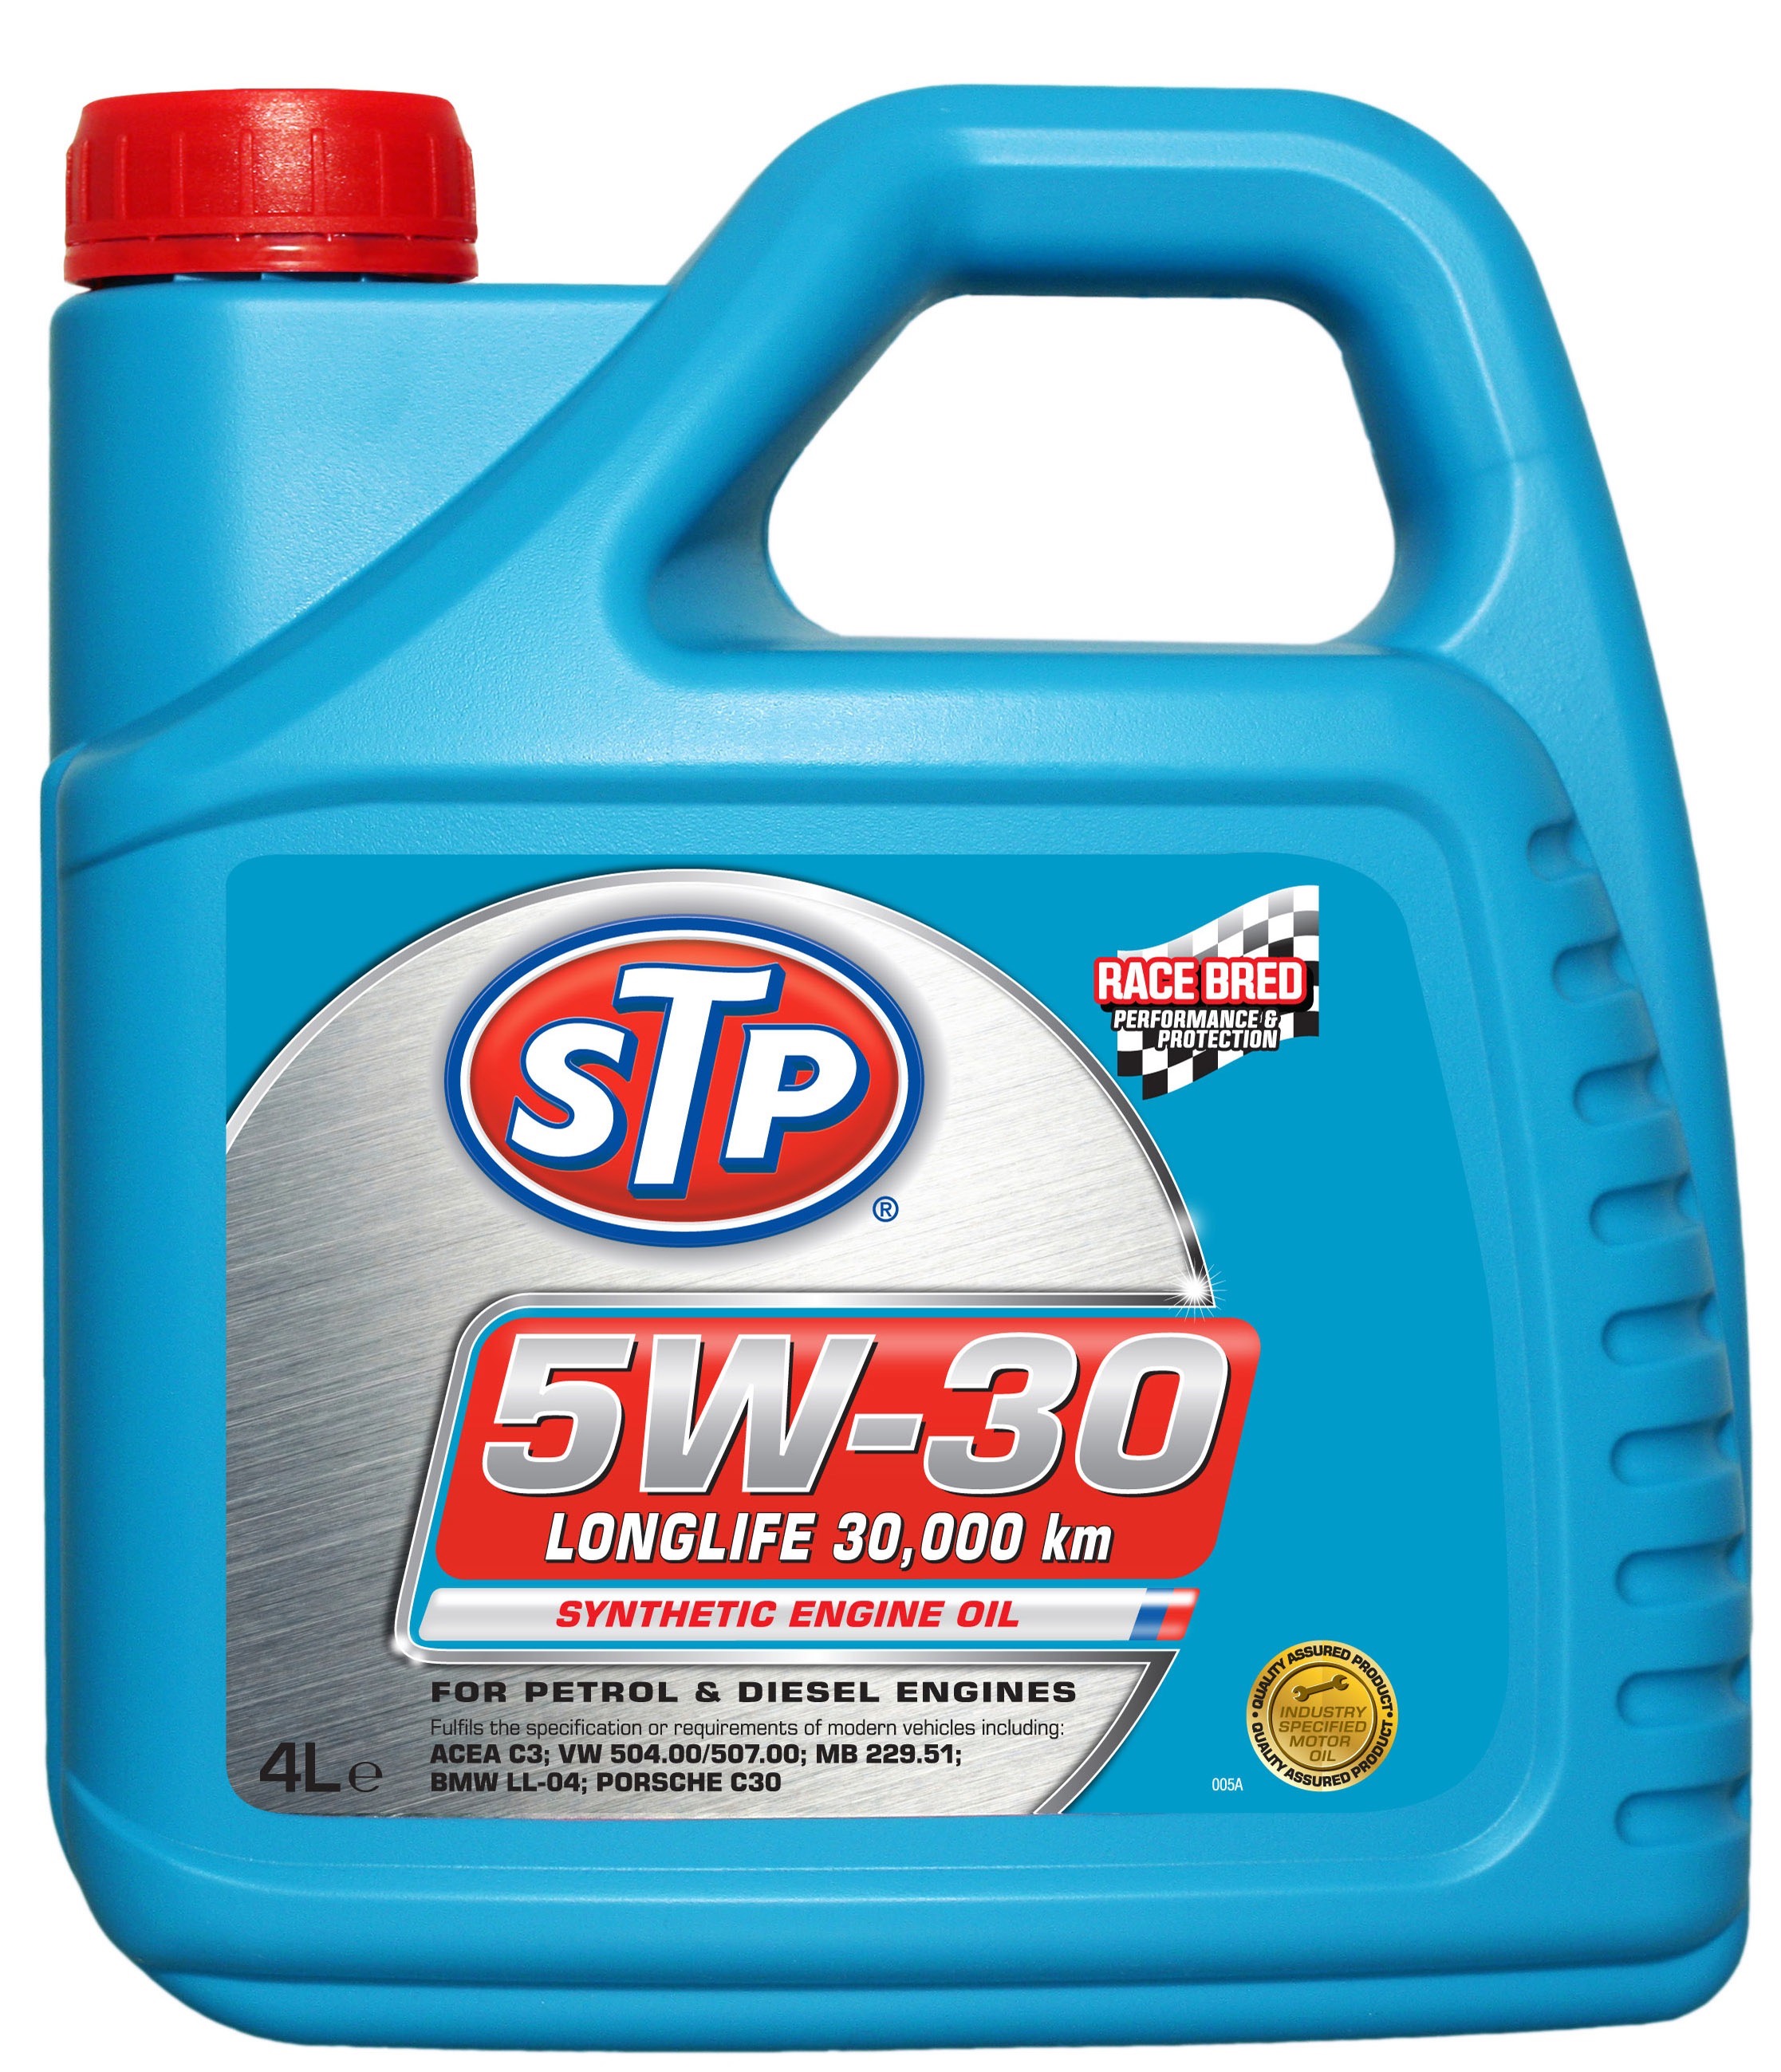 STP 5W-30 Longlife synthetic motorolje